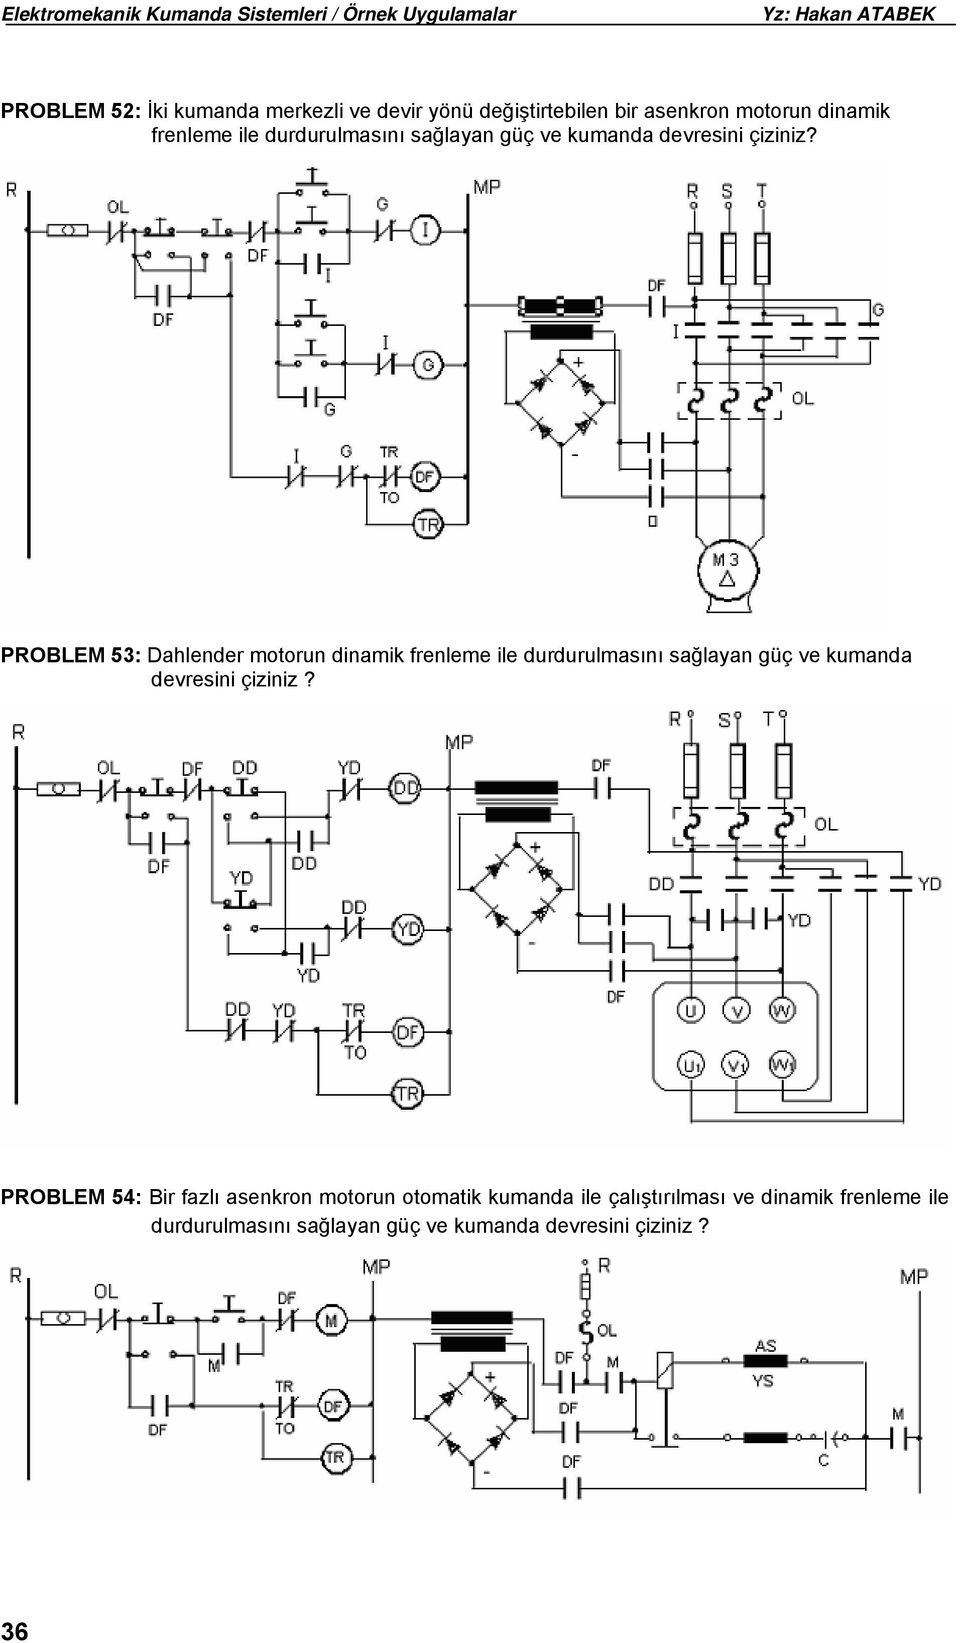 PROBLEM 53: Dahlender motorun dinamik frenleme ile  PROBLEM 54: Bir fazlı asenkron motorun otomatik kumanda